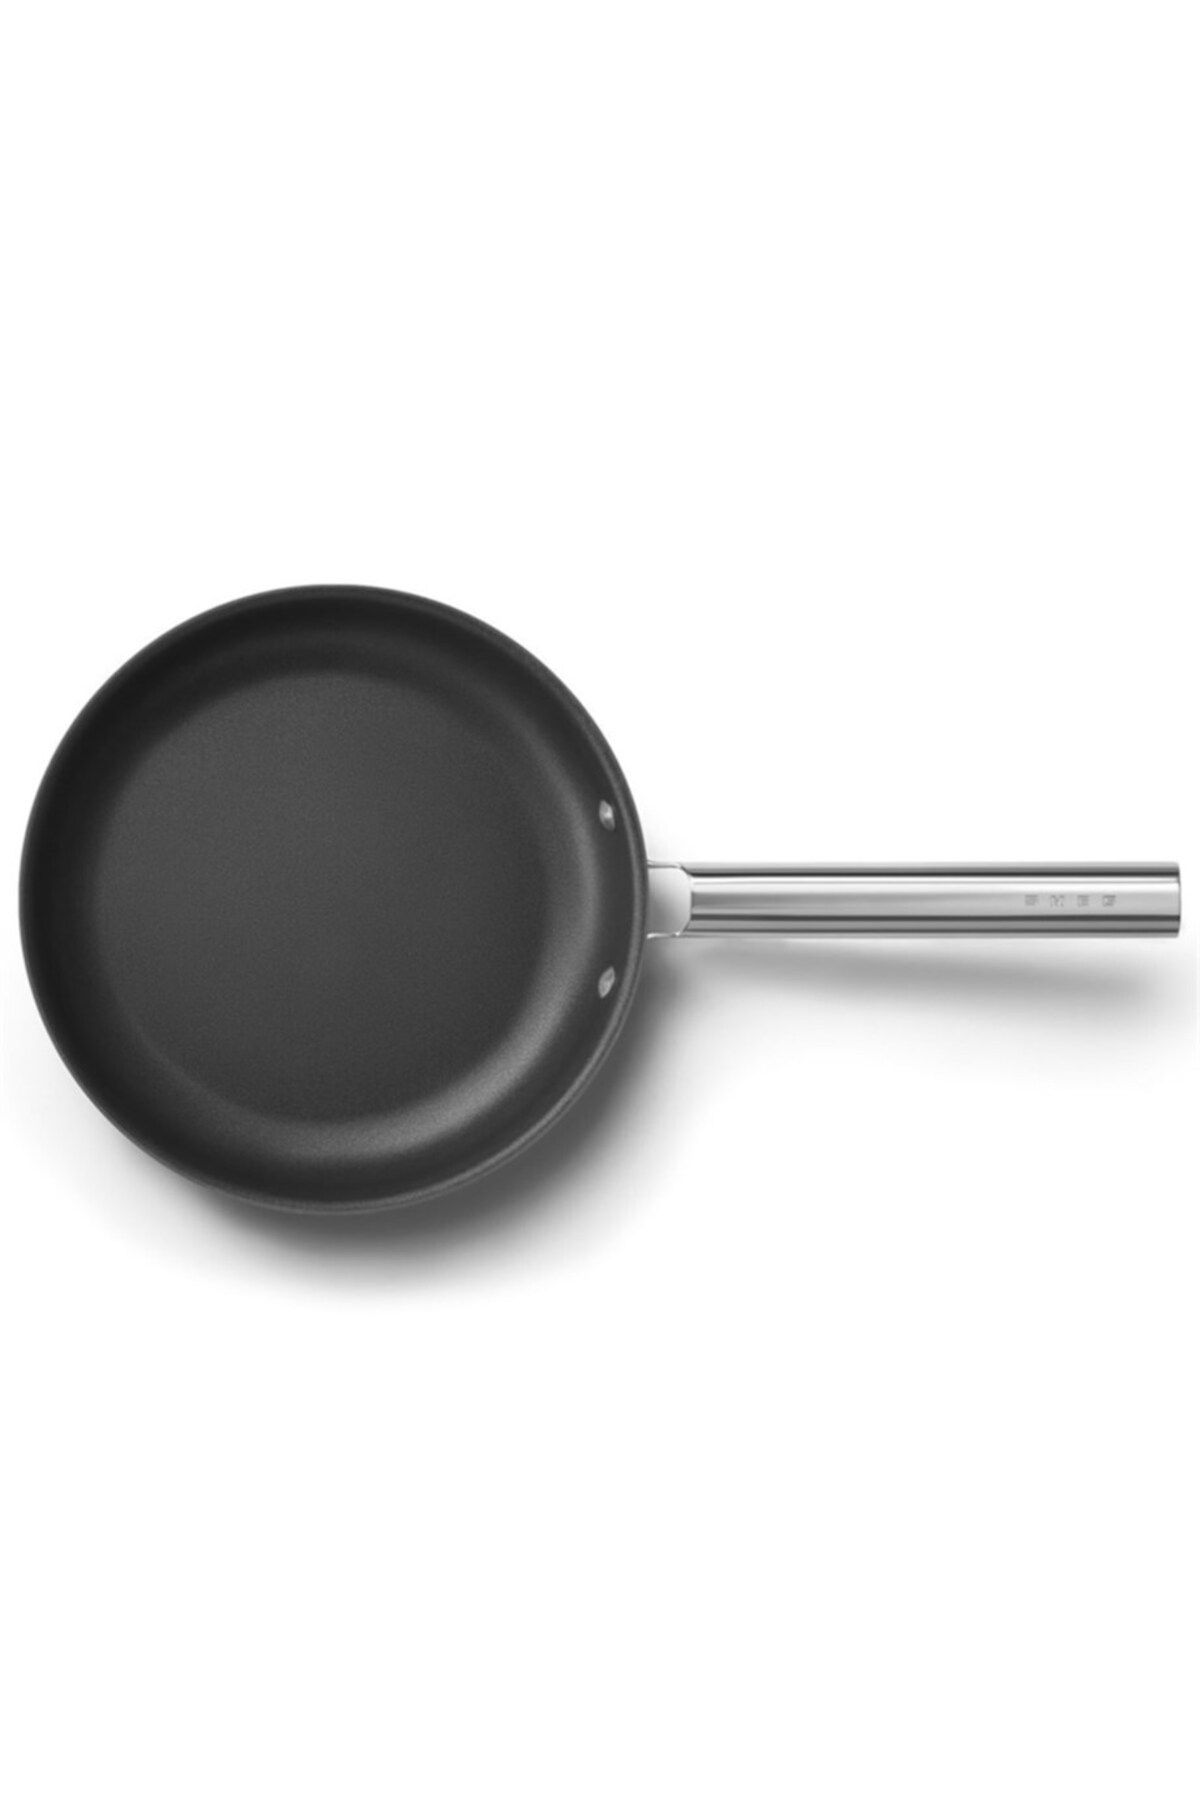 Smeg Cookware 50's Style Siyah Tava 26 Cm